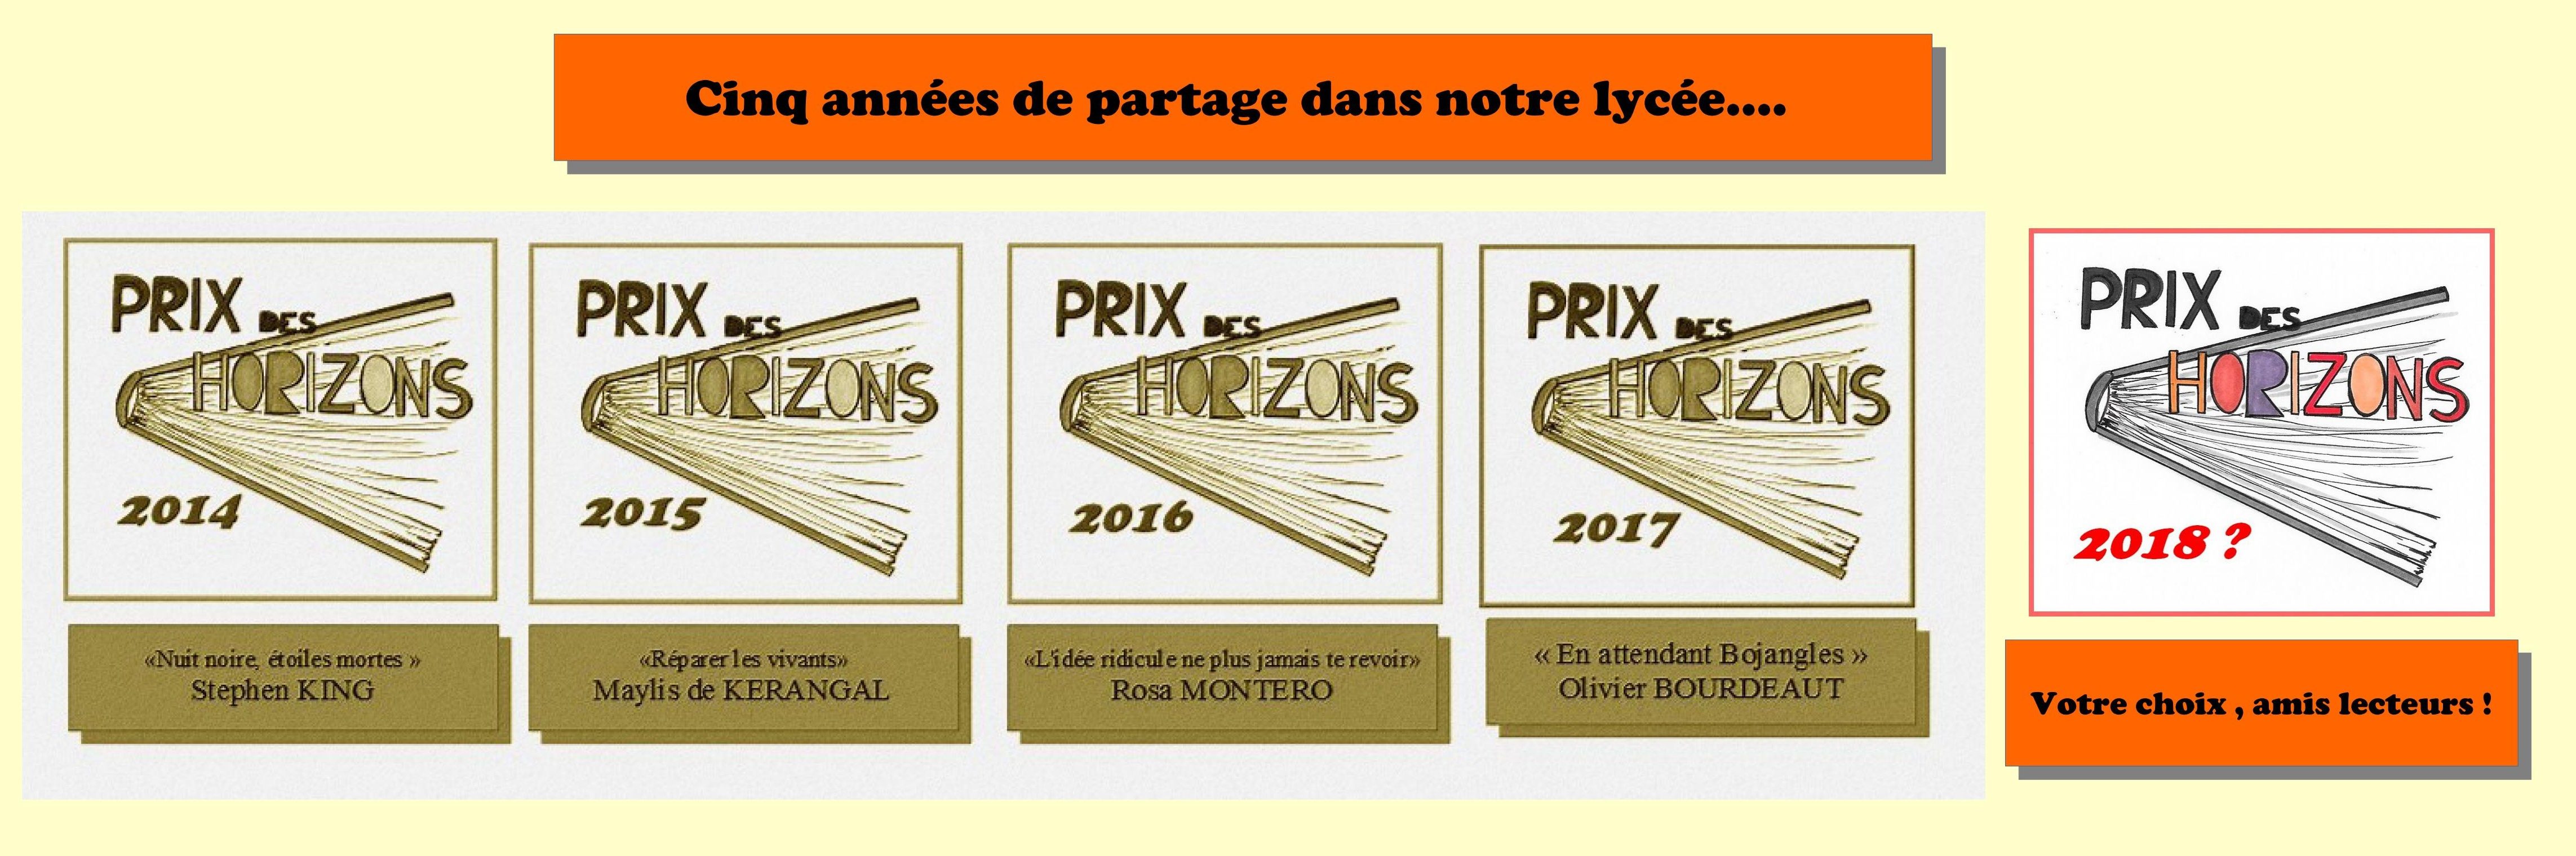 Flyer suite Prix Horizons 2018.jpg